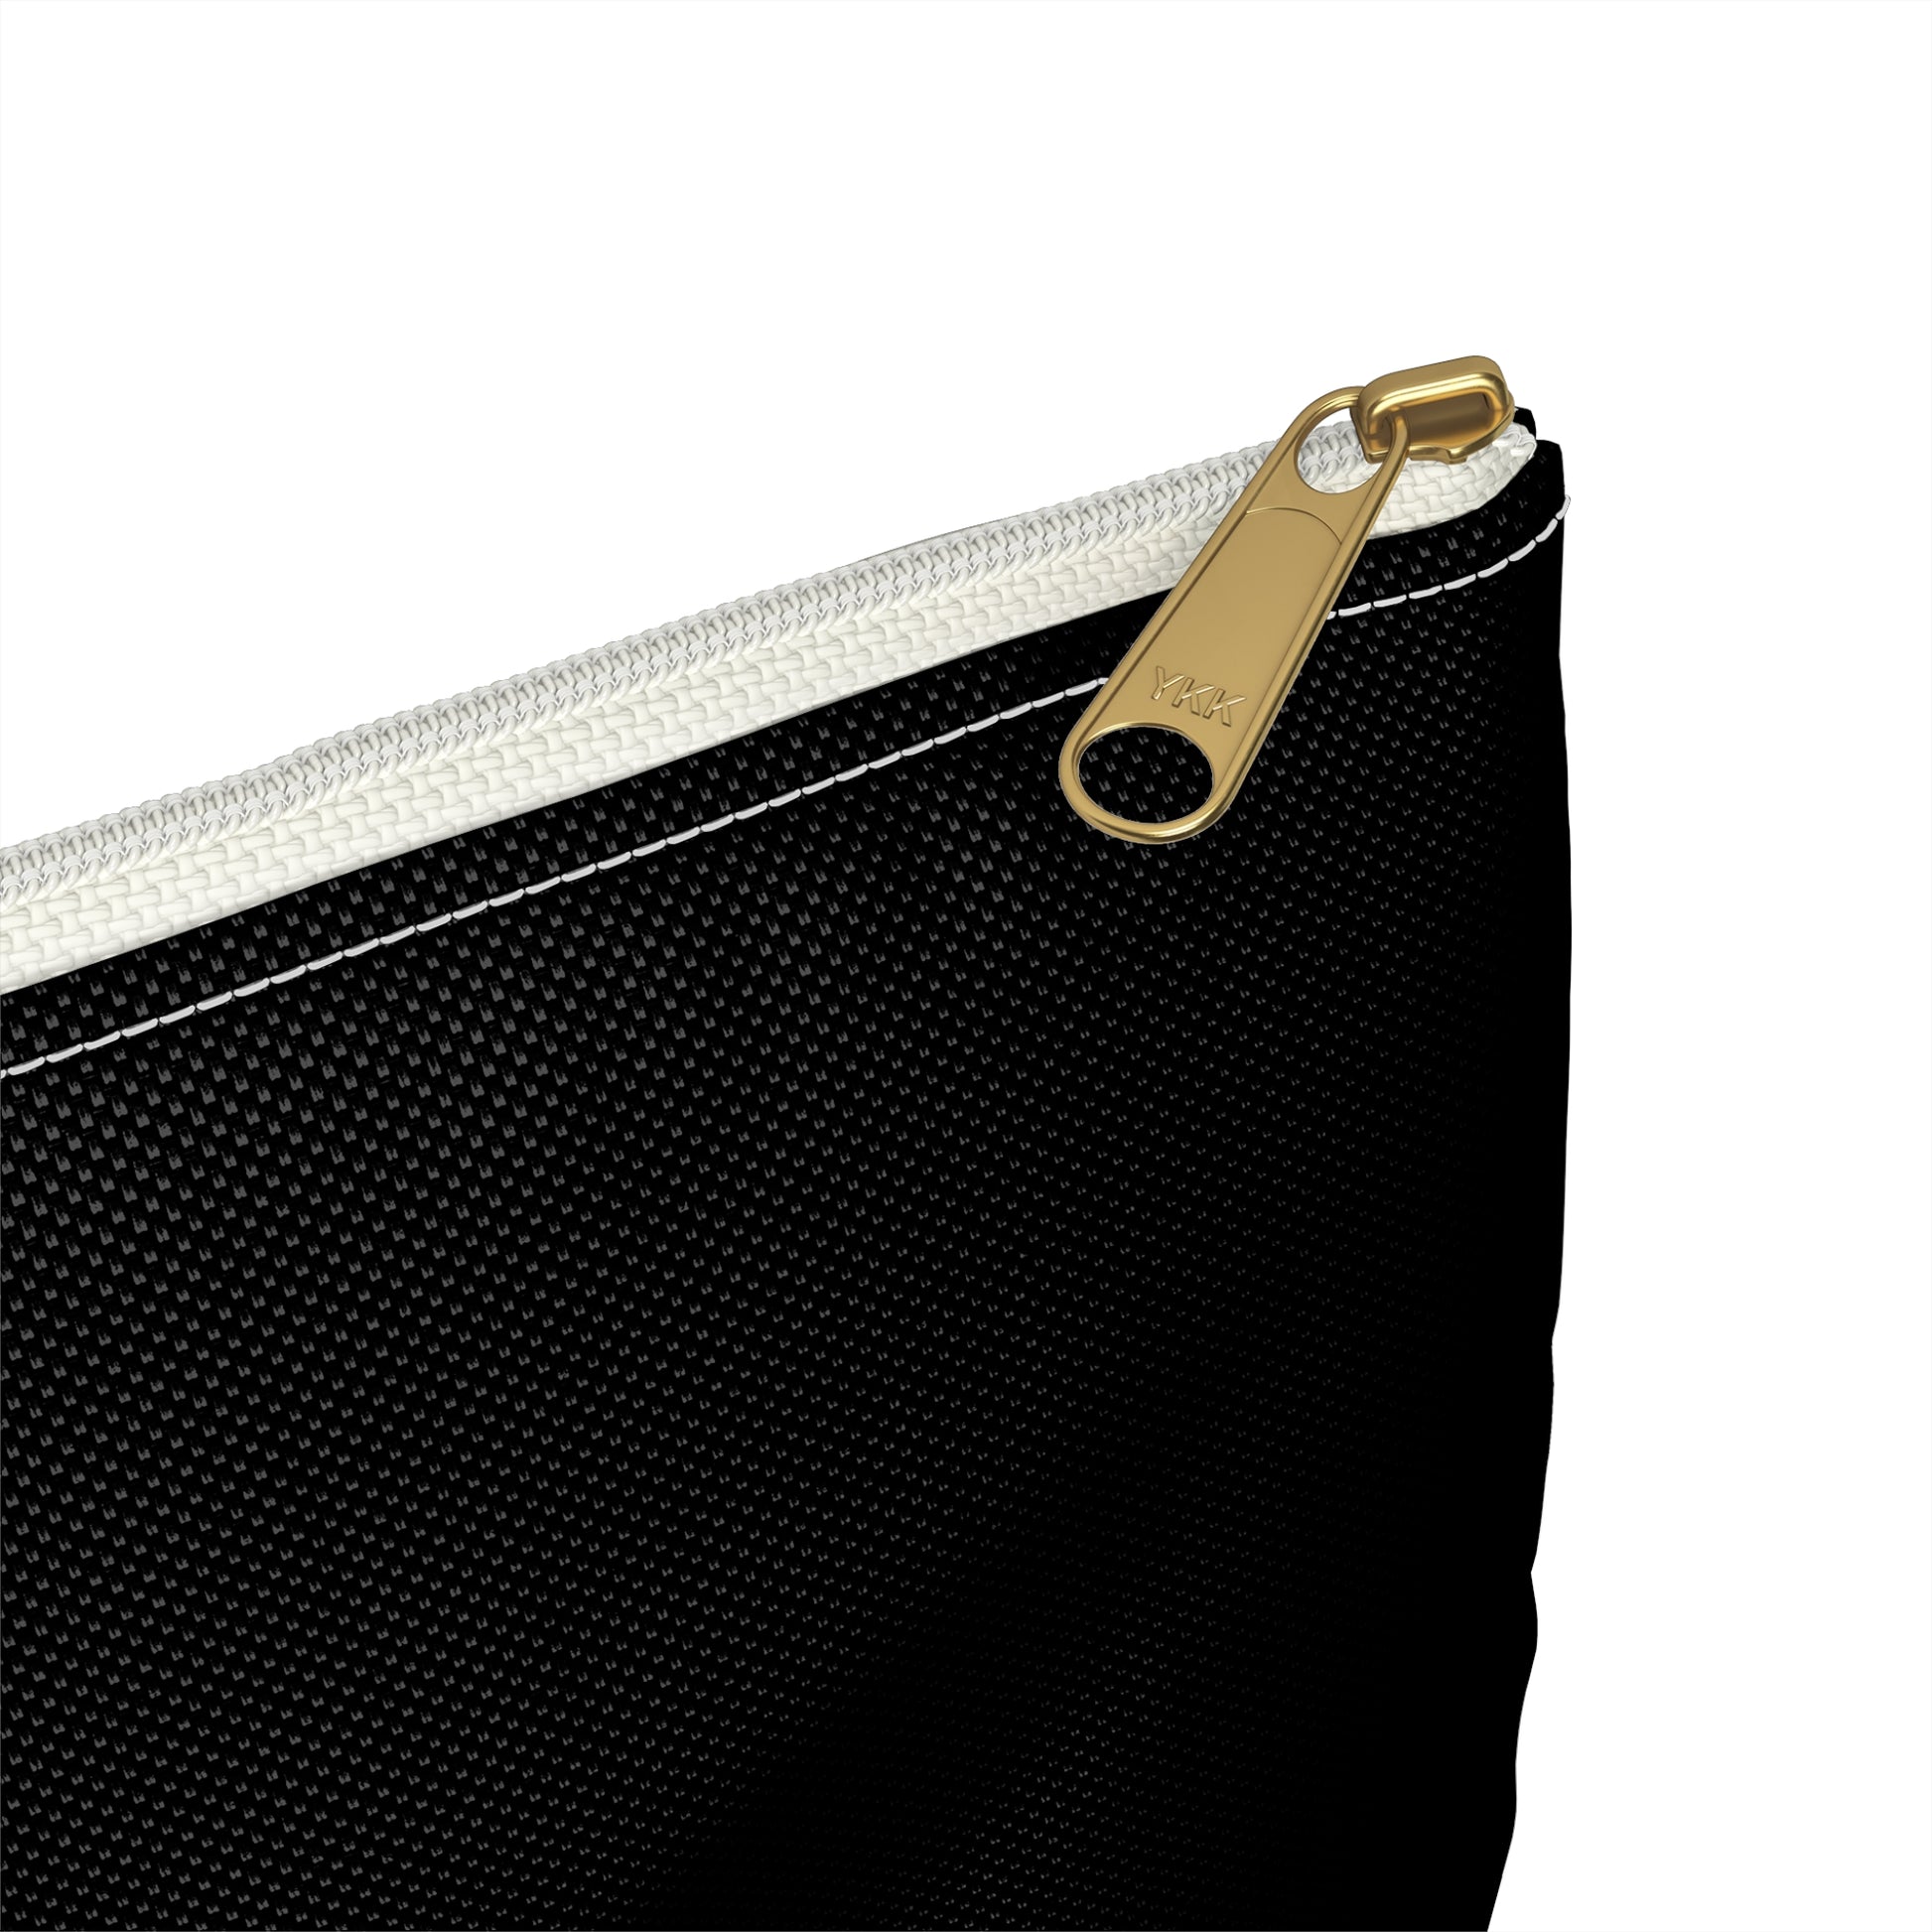 a close up of a zipper on a black bag